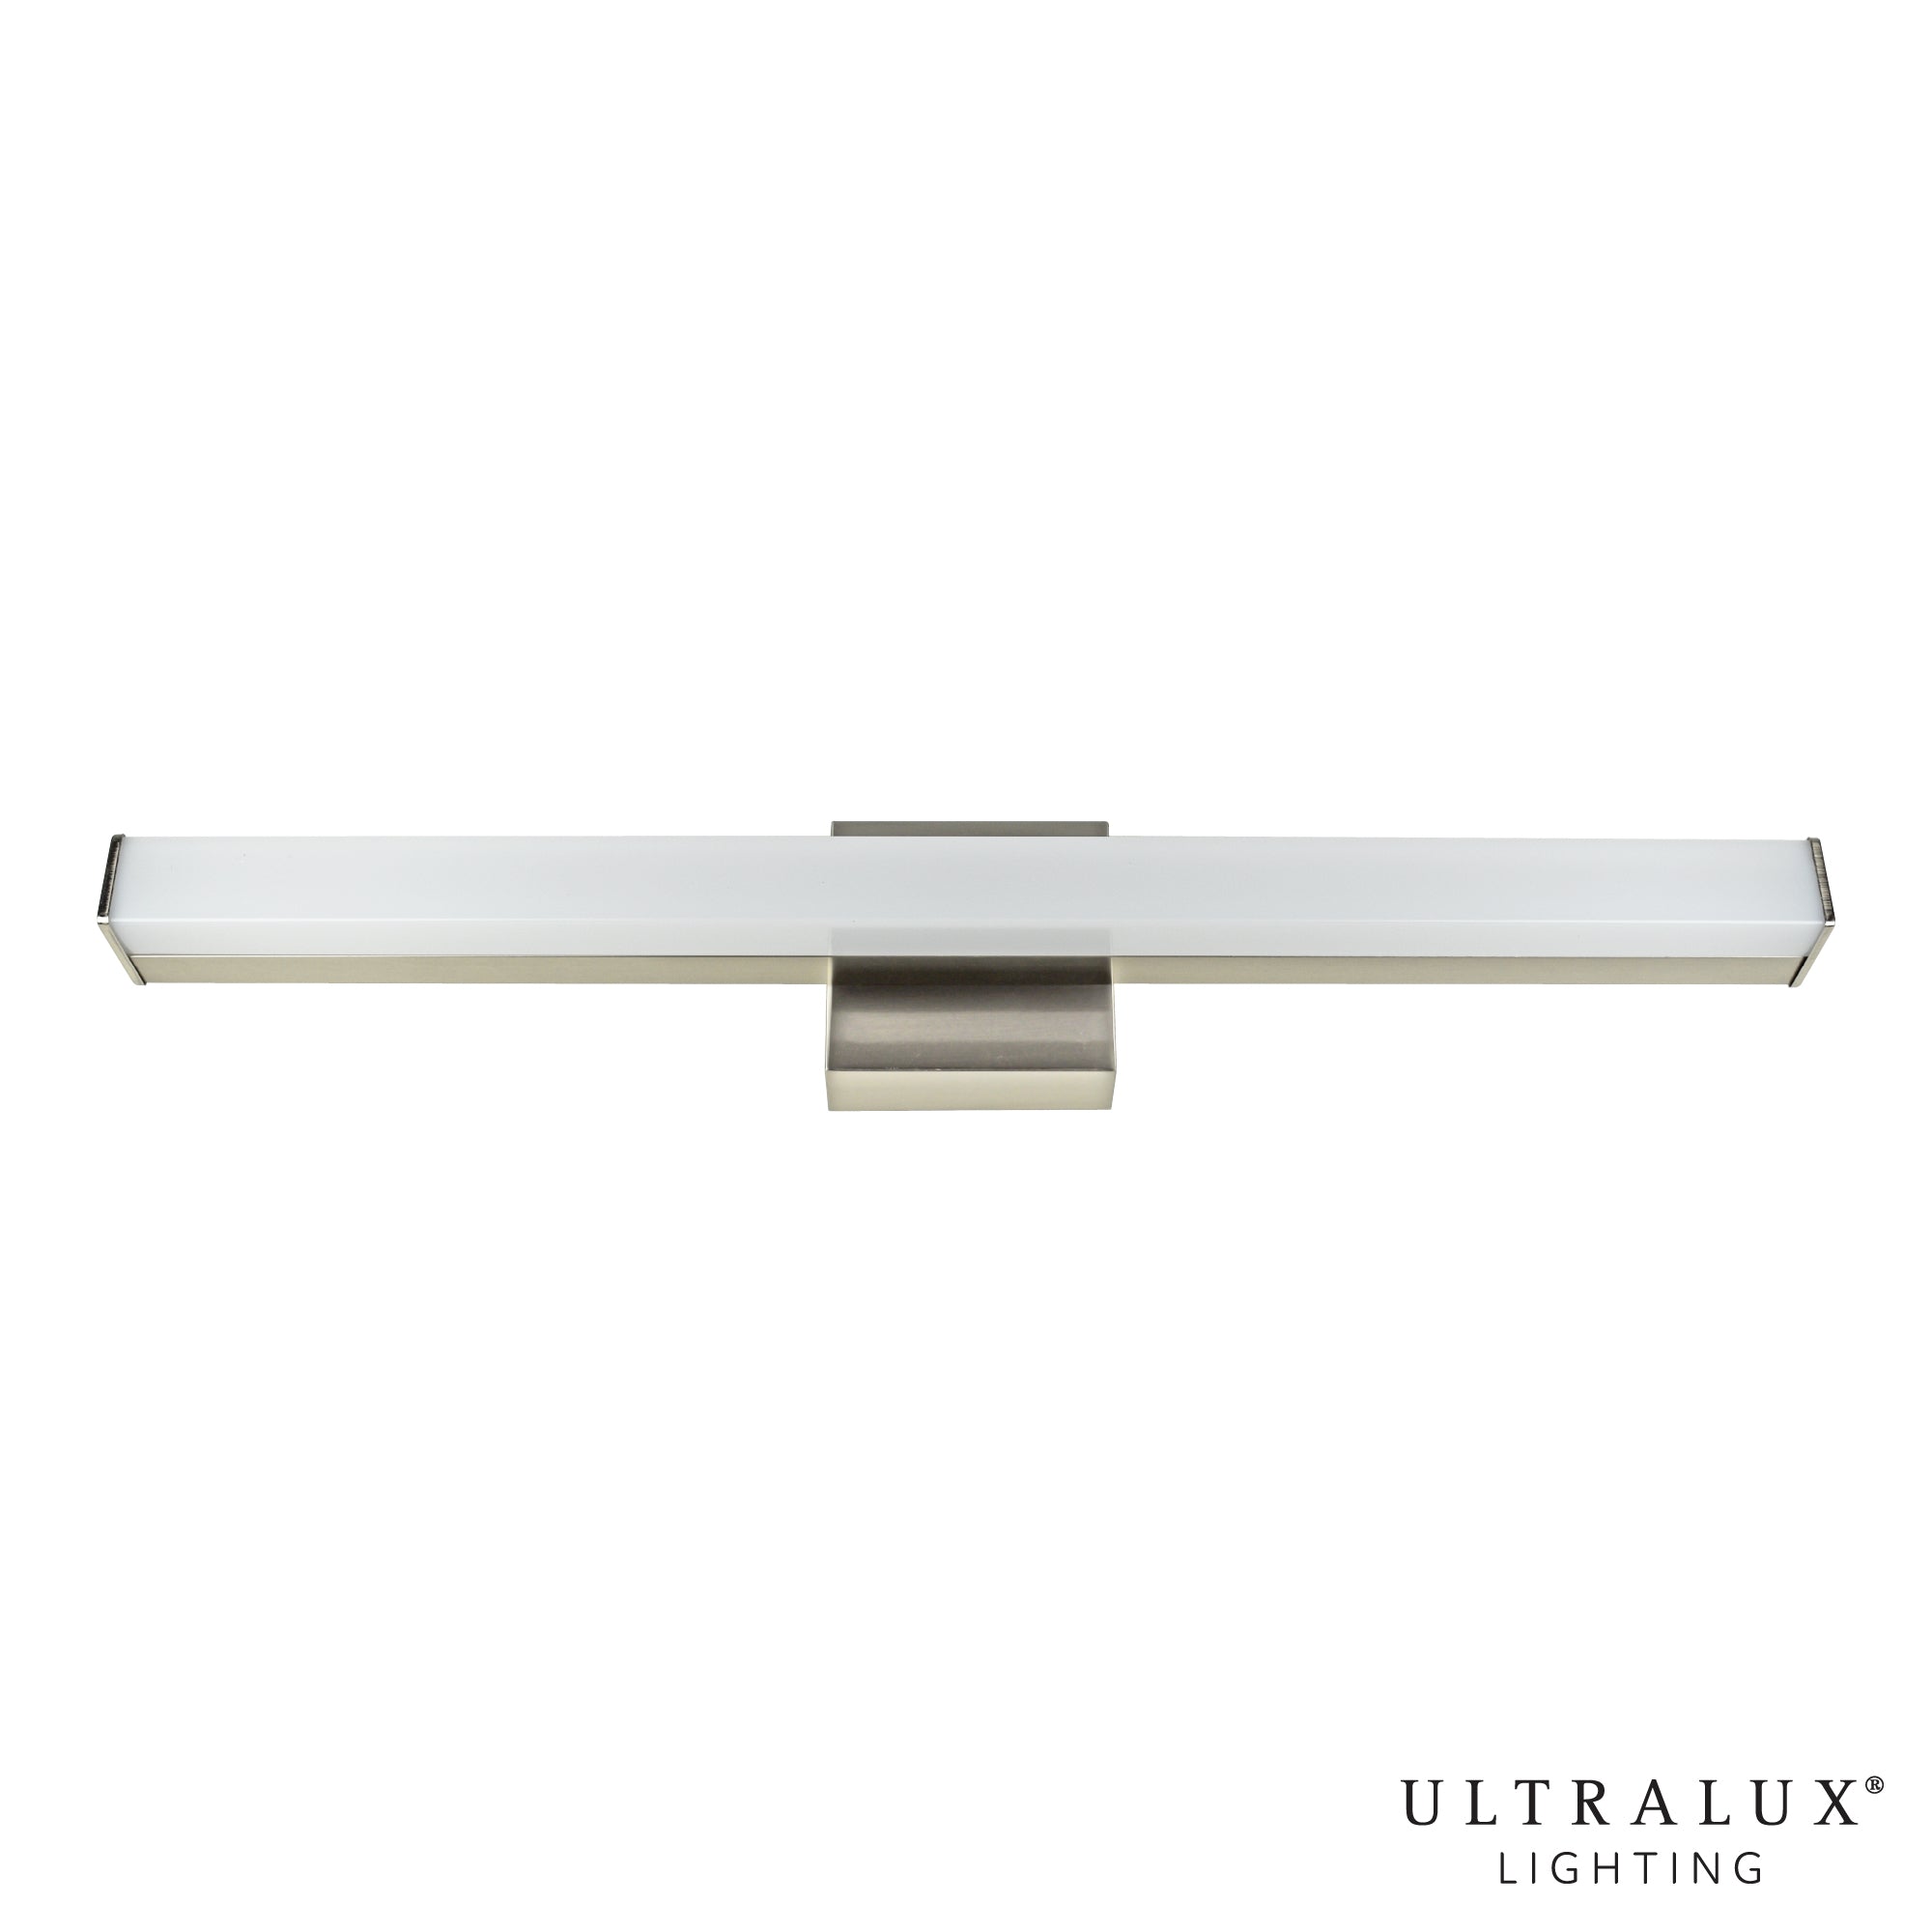 ULTRALUX® Utility LED Vanity Light Bar